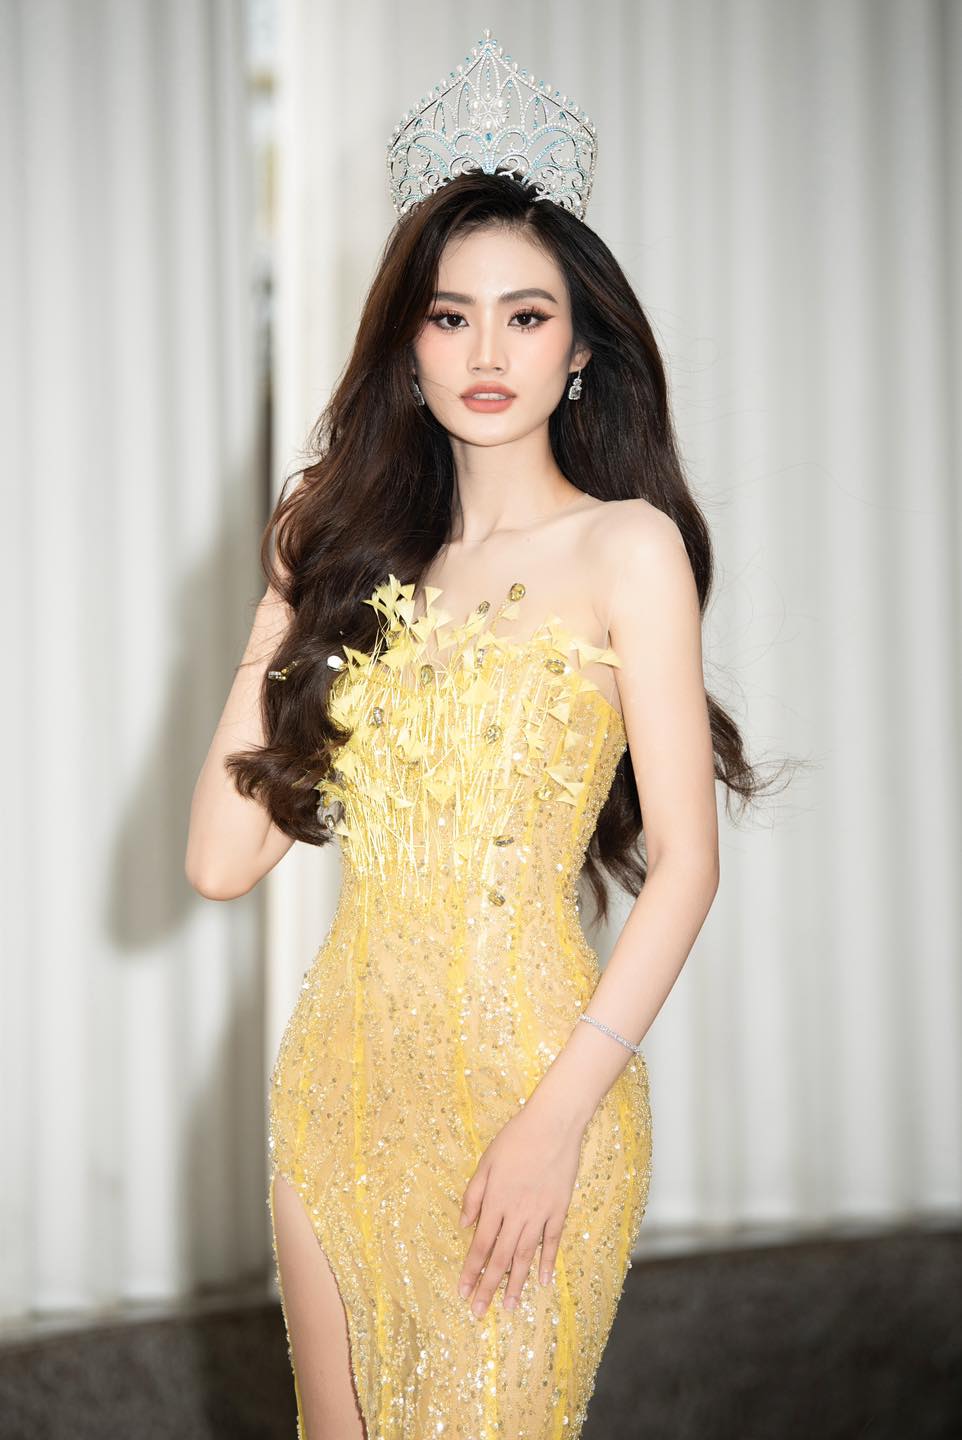 Sáng nay Sở Văn hóa Thể thao tỉnh Bình Định làm việc với BTC Miss World Vietnam, Ý Nhi có bị tước danh hiệu? - ảnh 3